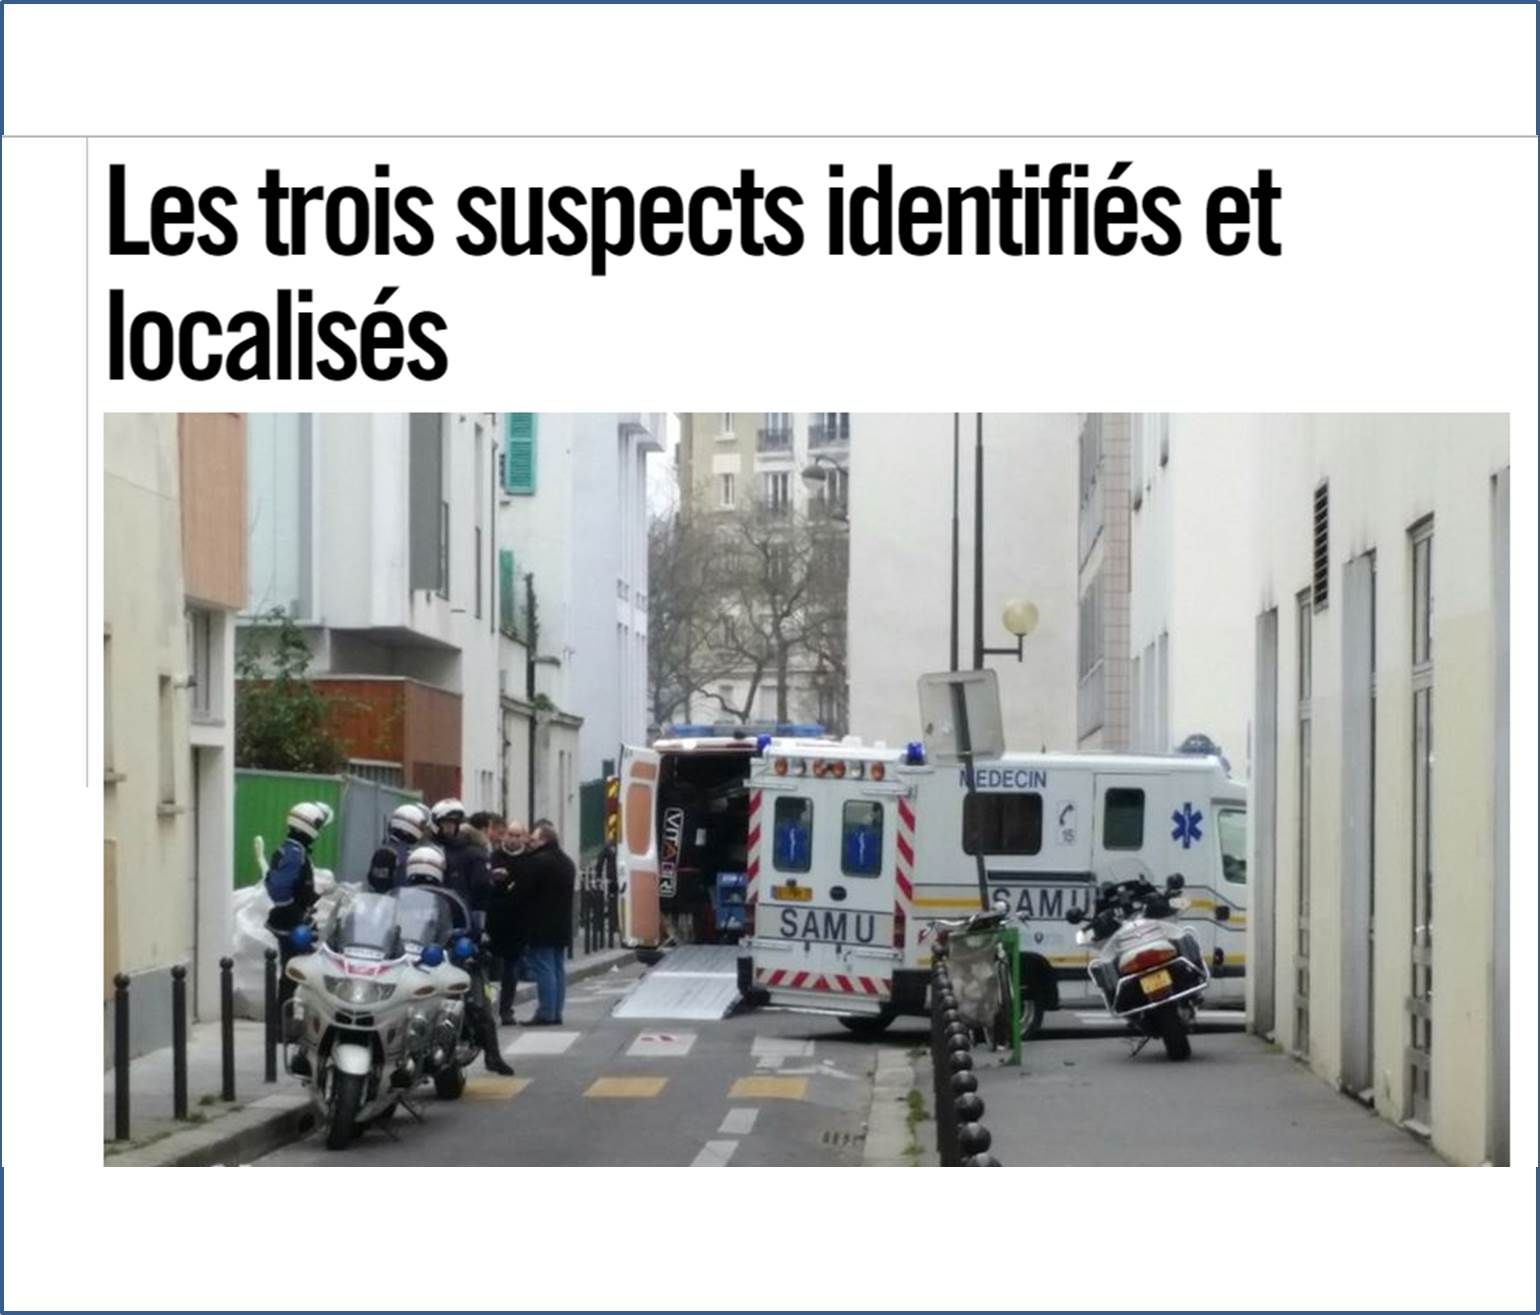 Secondo il sito francese Liberation i terroristi sarebbero stati identificati